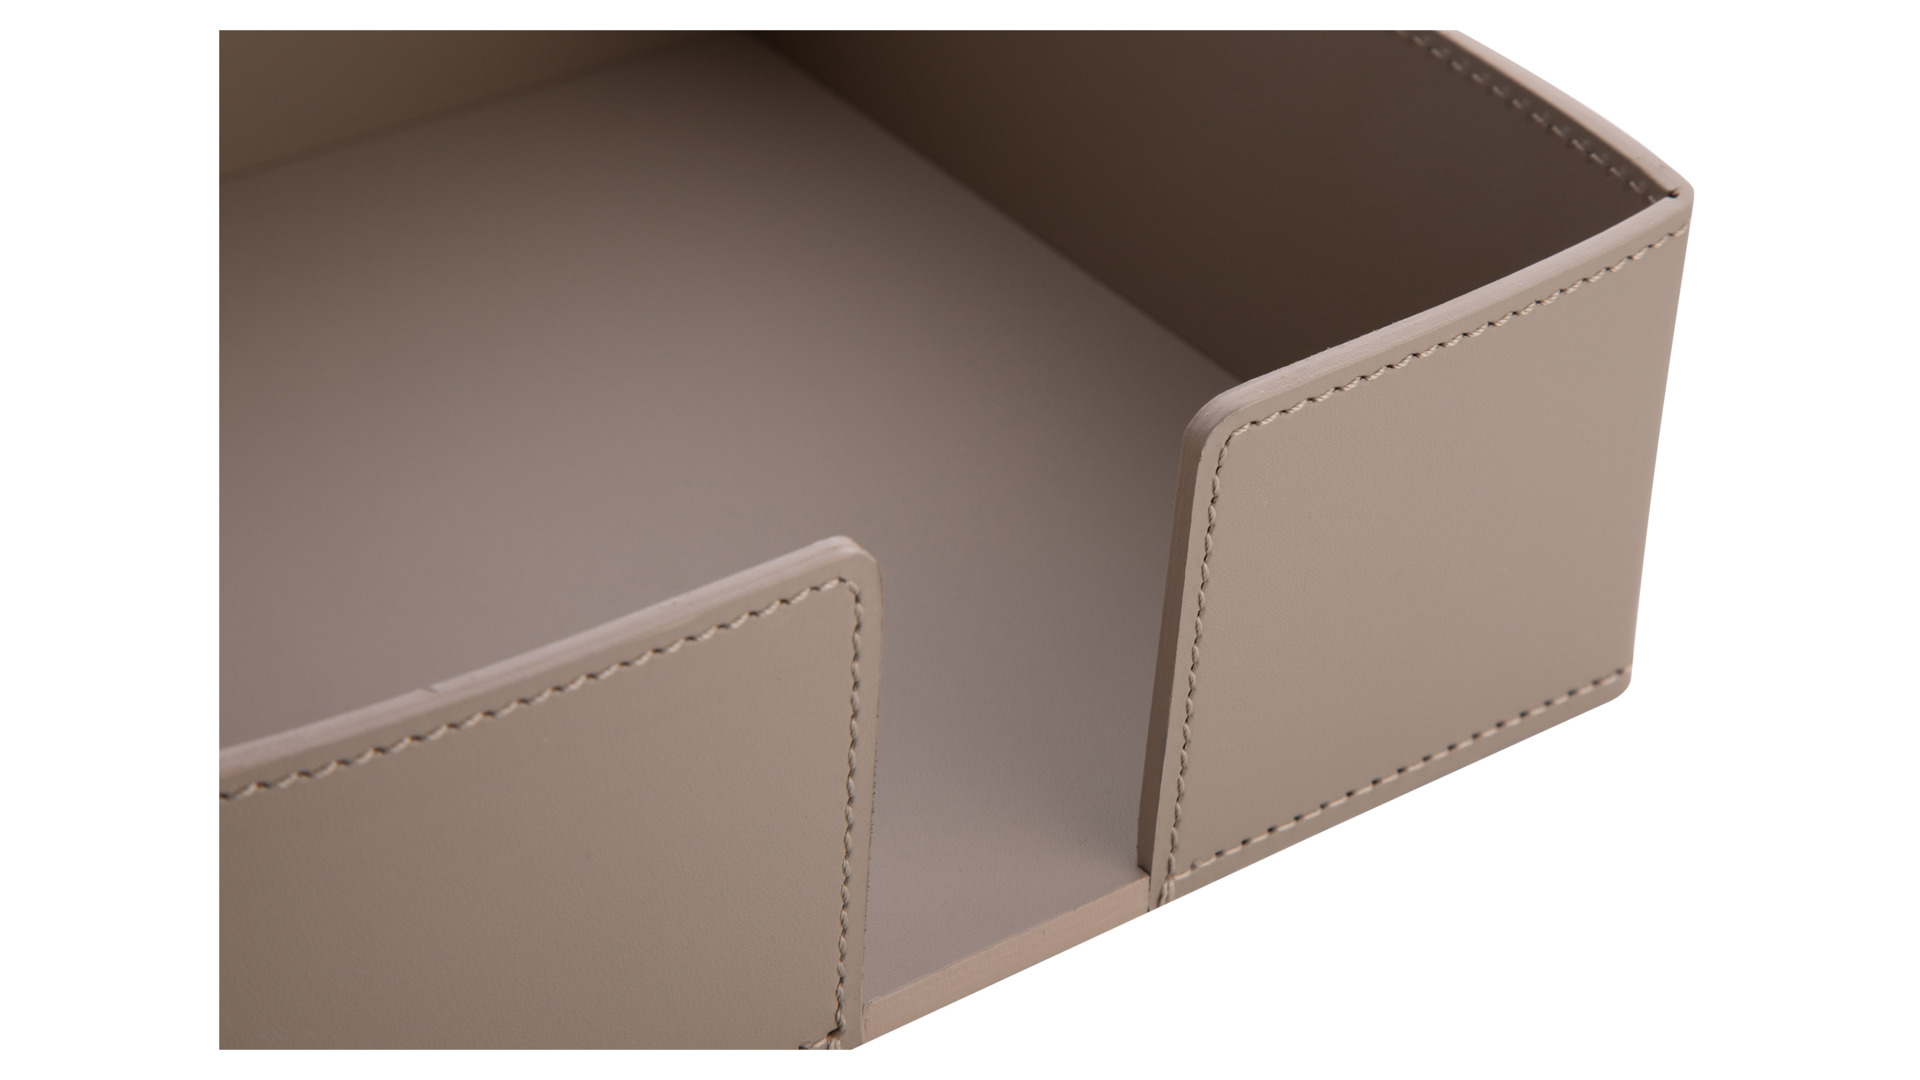 Подставка для салфеток Rudi Виола 20,5х20,5 см, серо-коричневая